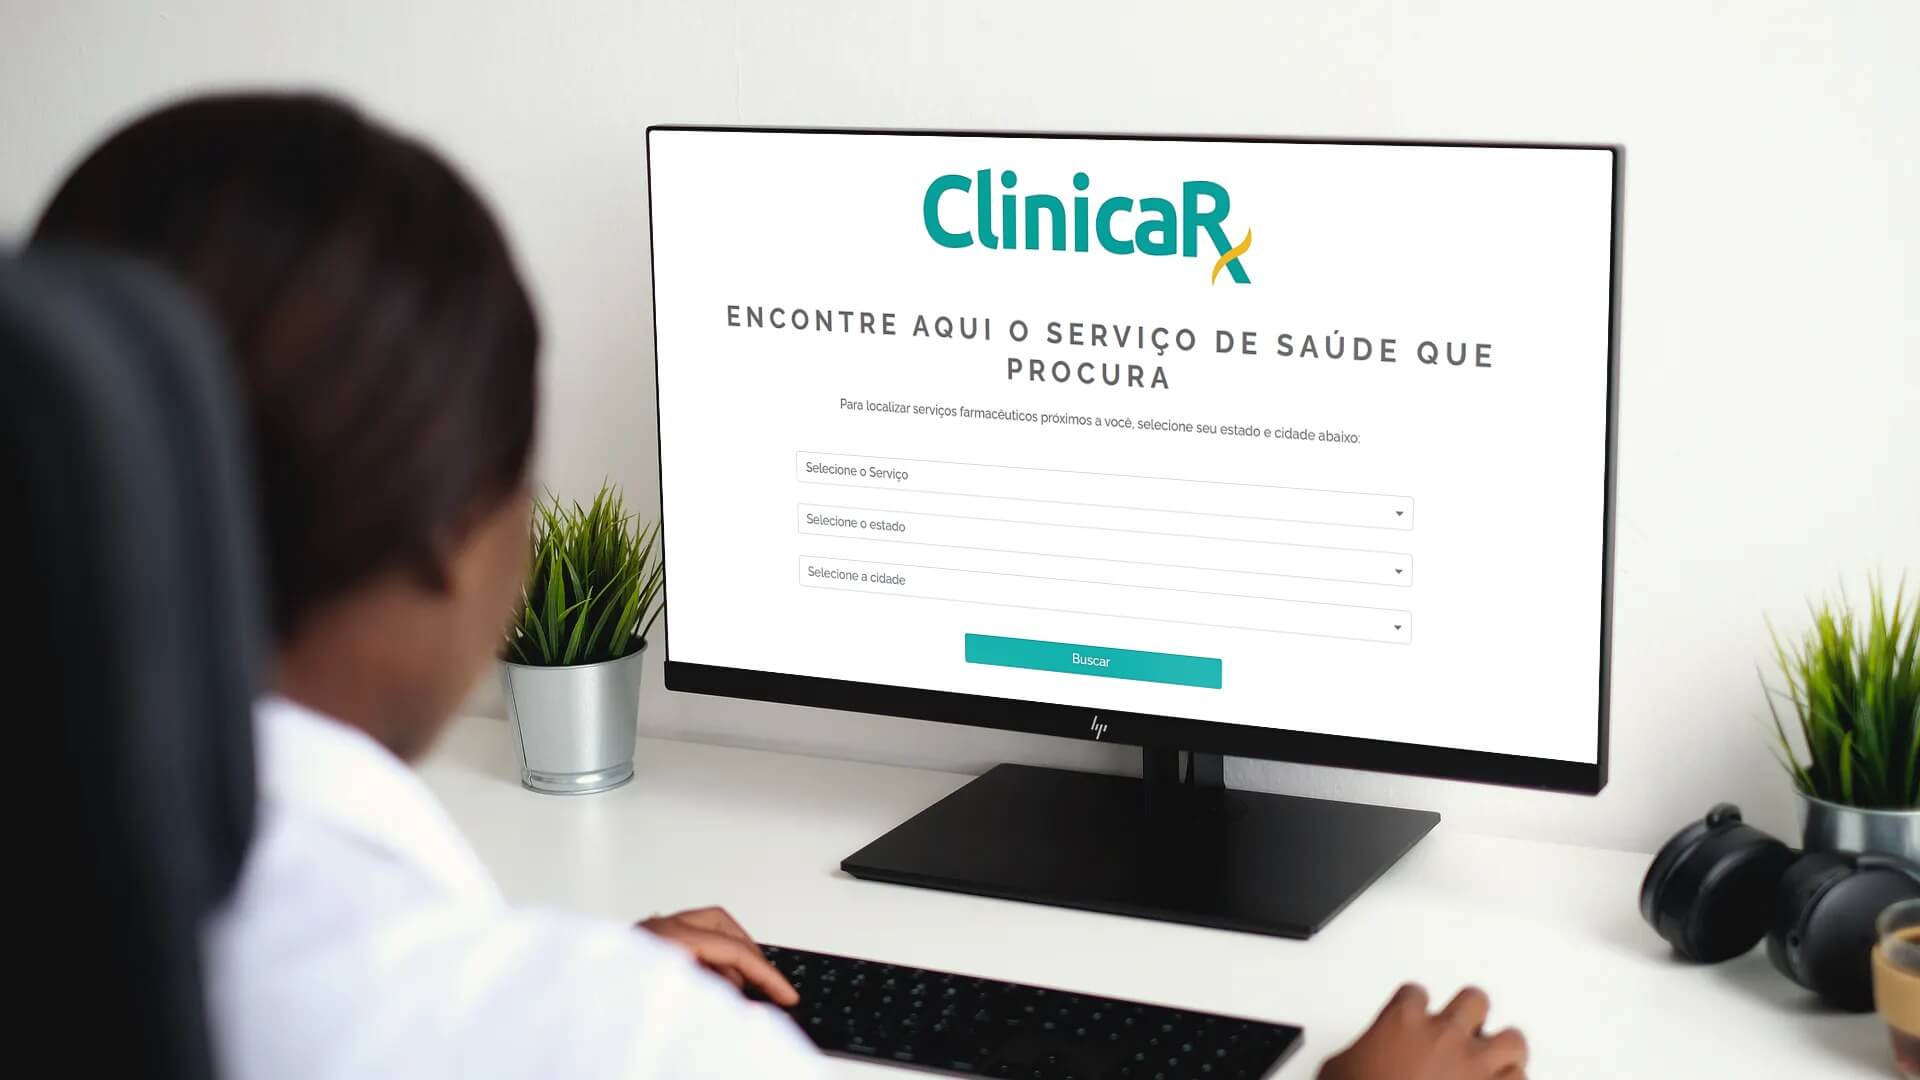 Agendamento de serviços de saúde Clinicarx